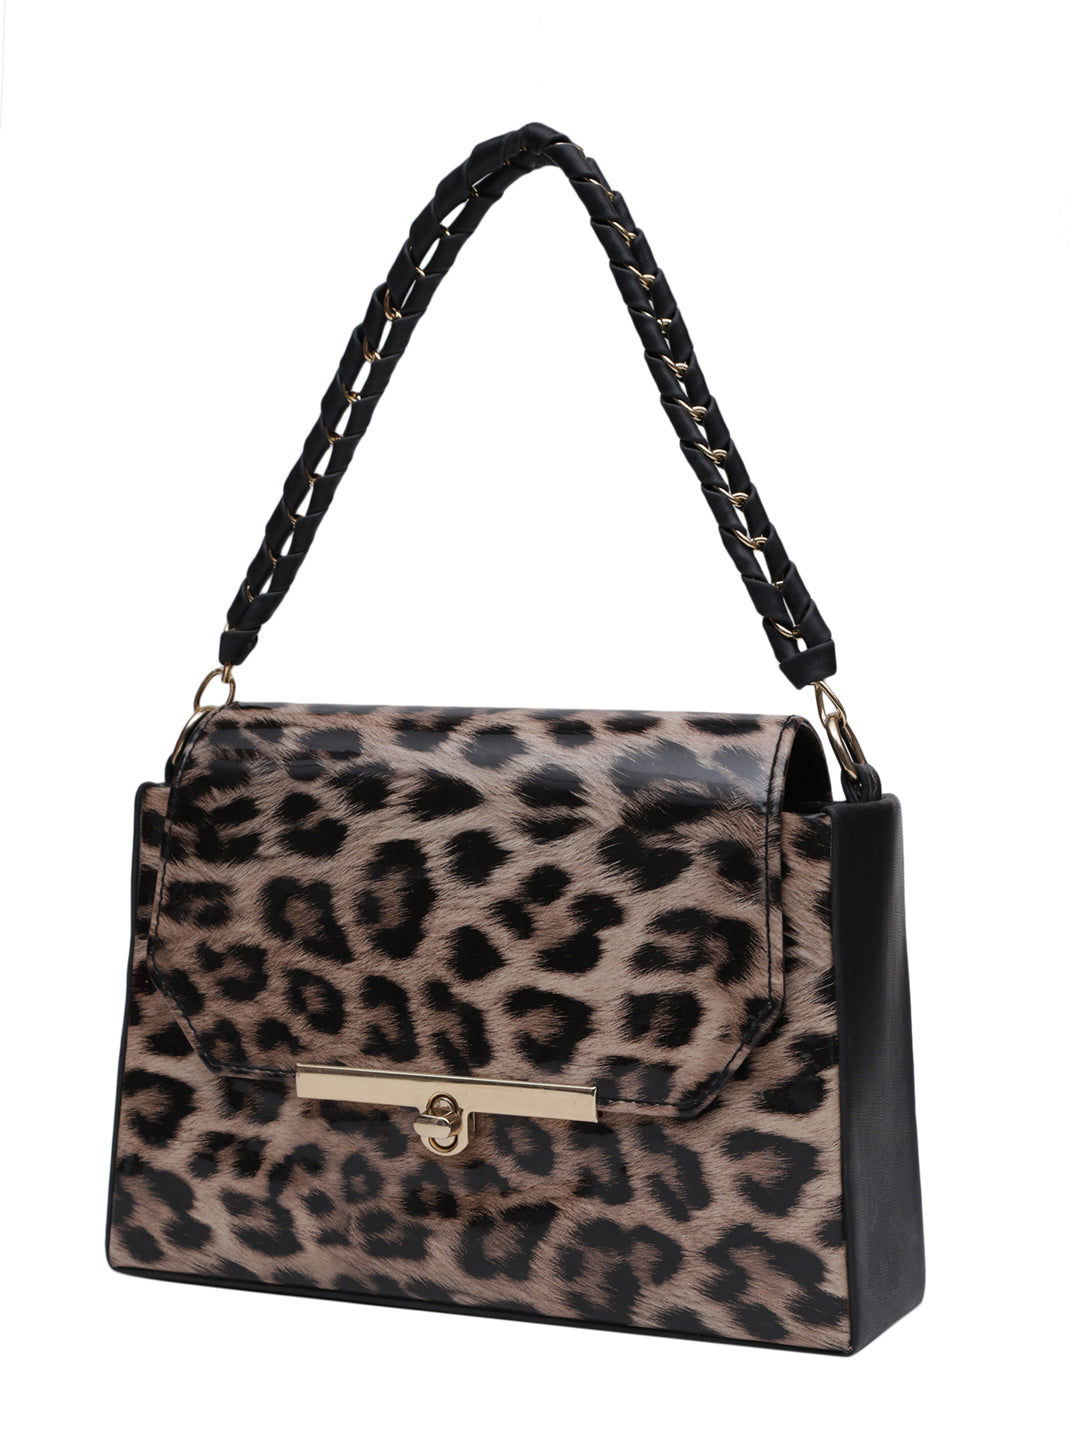 MINI WESST Brown Casual Animal Handheld Bag(MWHB165PR)